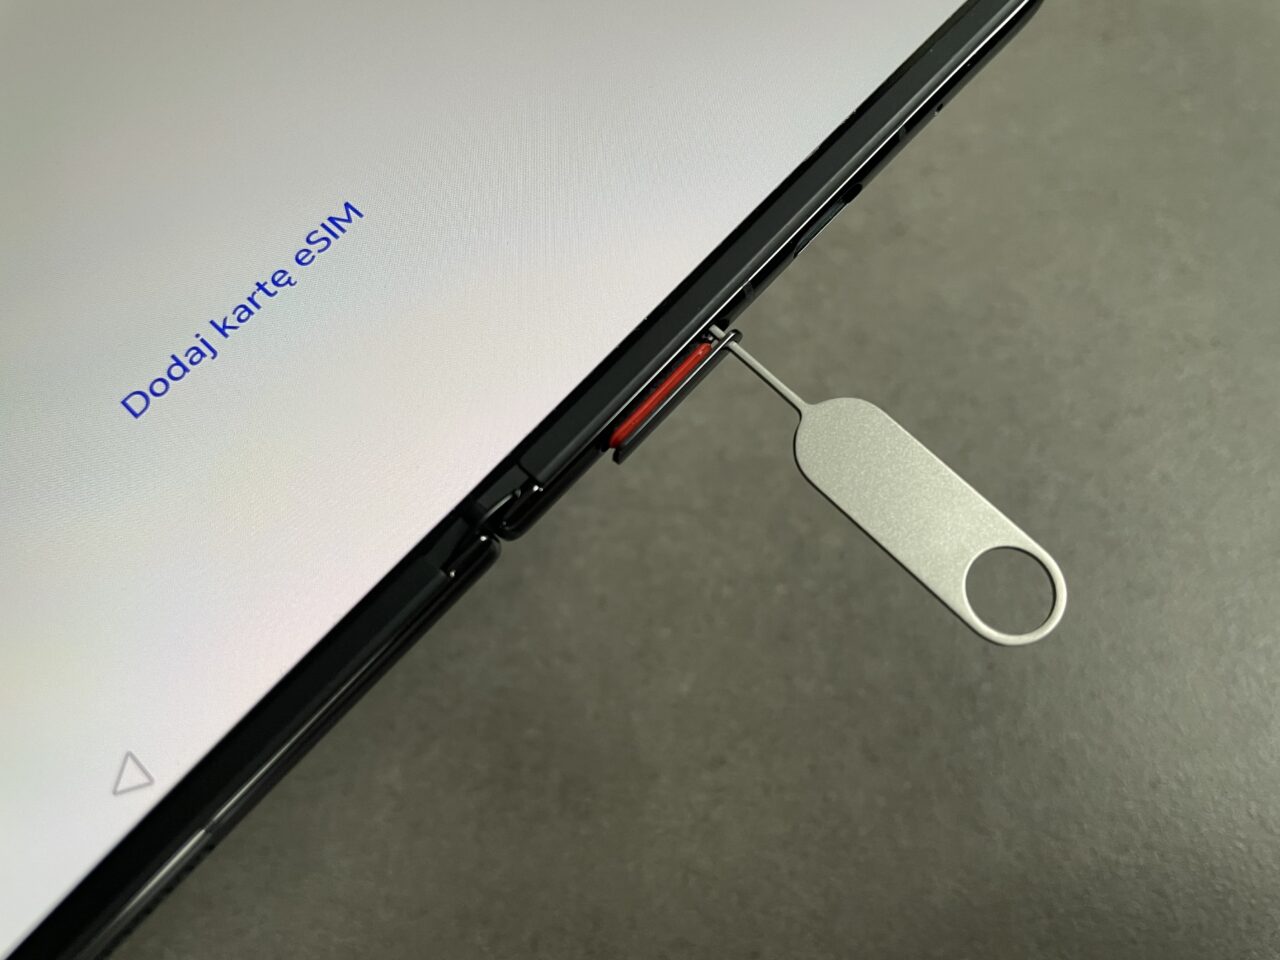 Zdjęcie ekranu telefonu z napisem "Dodaj Kartę eSIM" i fragmentem wyciąganego tacki na kartę SIM z użyciem metalowego narzędzia.